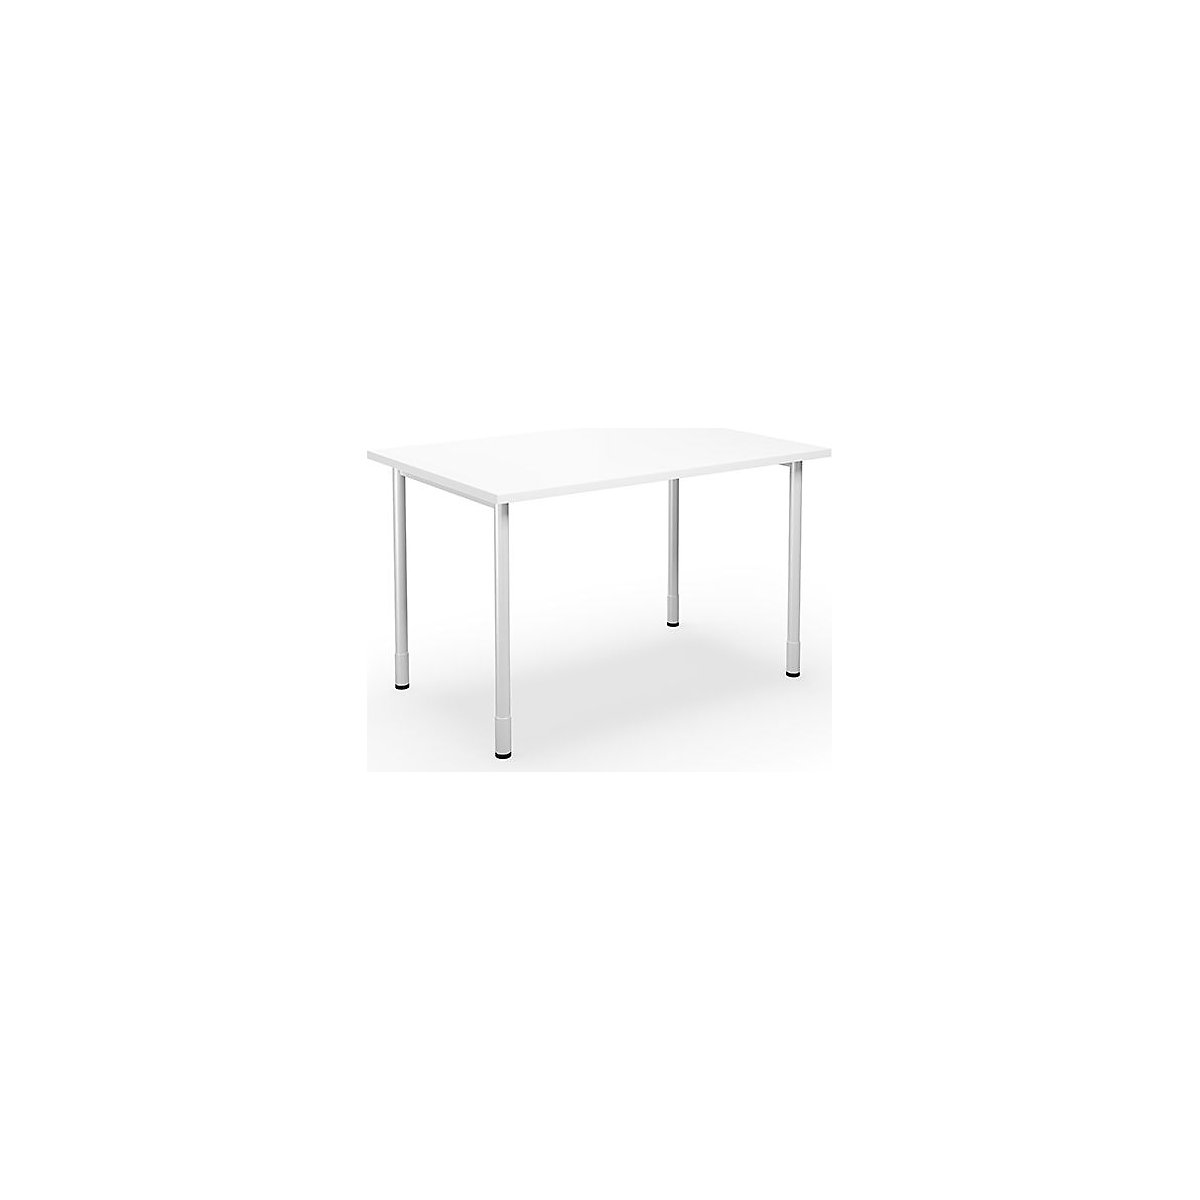 DUO-C multi-purpose desk, straight tabletop, WxD 1200 x 800 mm, white, white-2